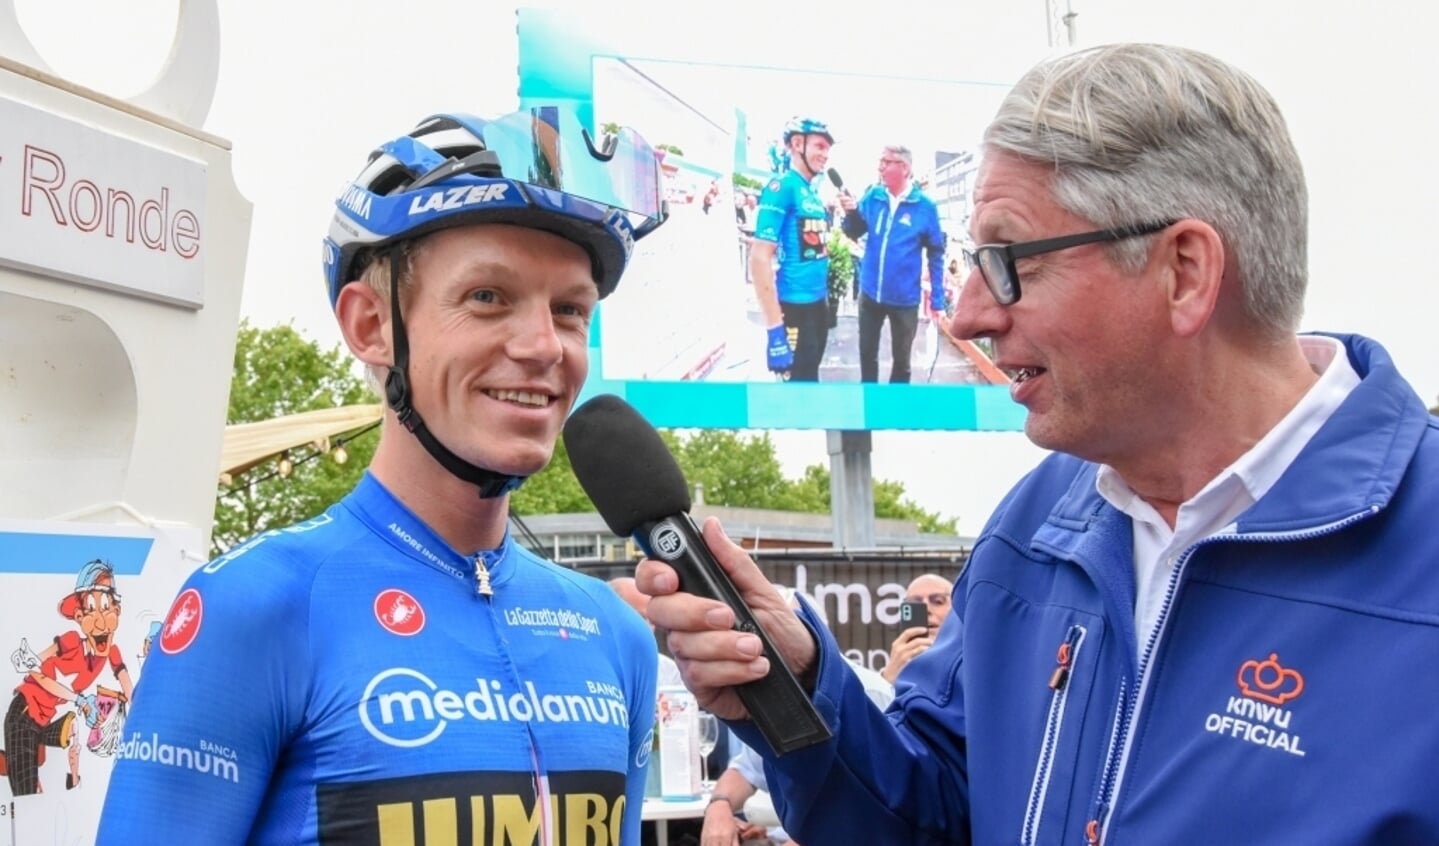 Rien van Horik in actie als wielerspeaker. Naast hem de winnaar van de bergtrui in de Giro d'Italia, Koen Bouwman.